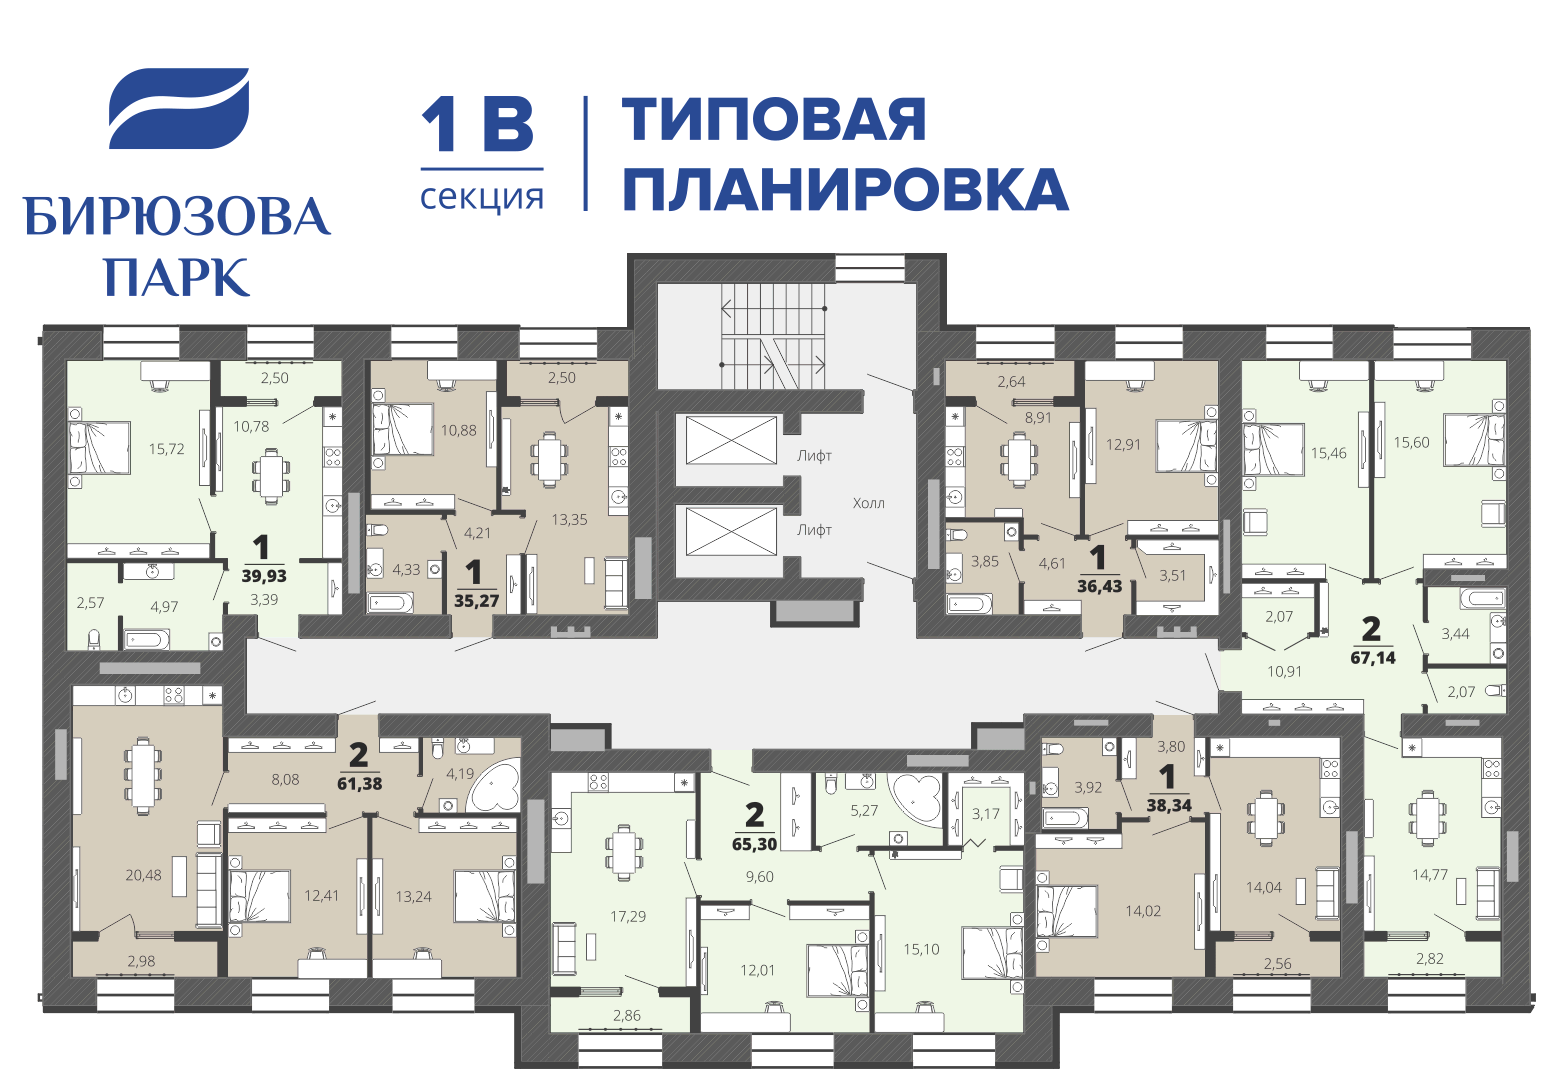 Типовая планировка жилого комплекса Бирюзова парк